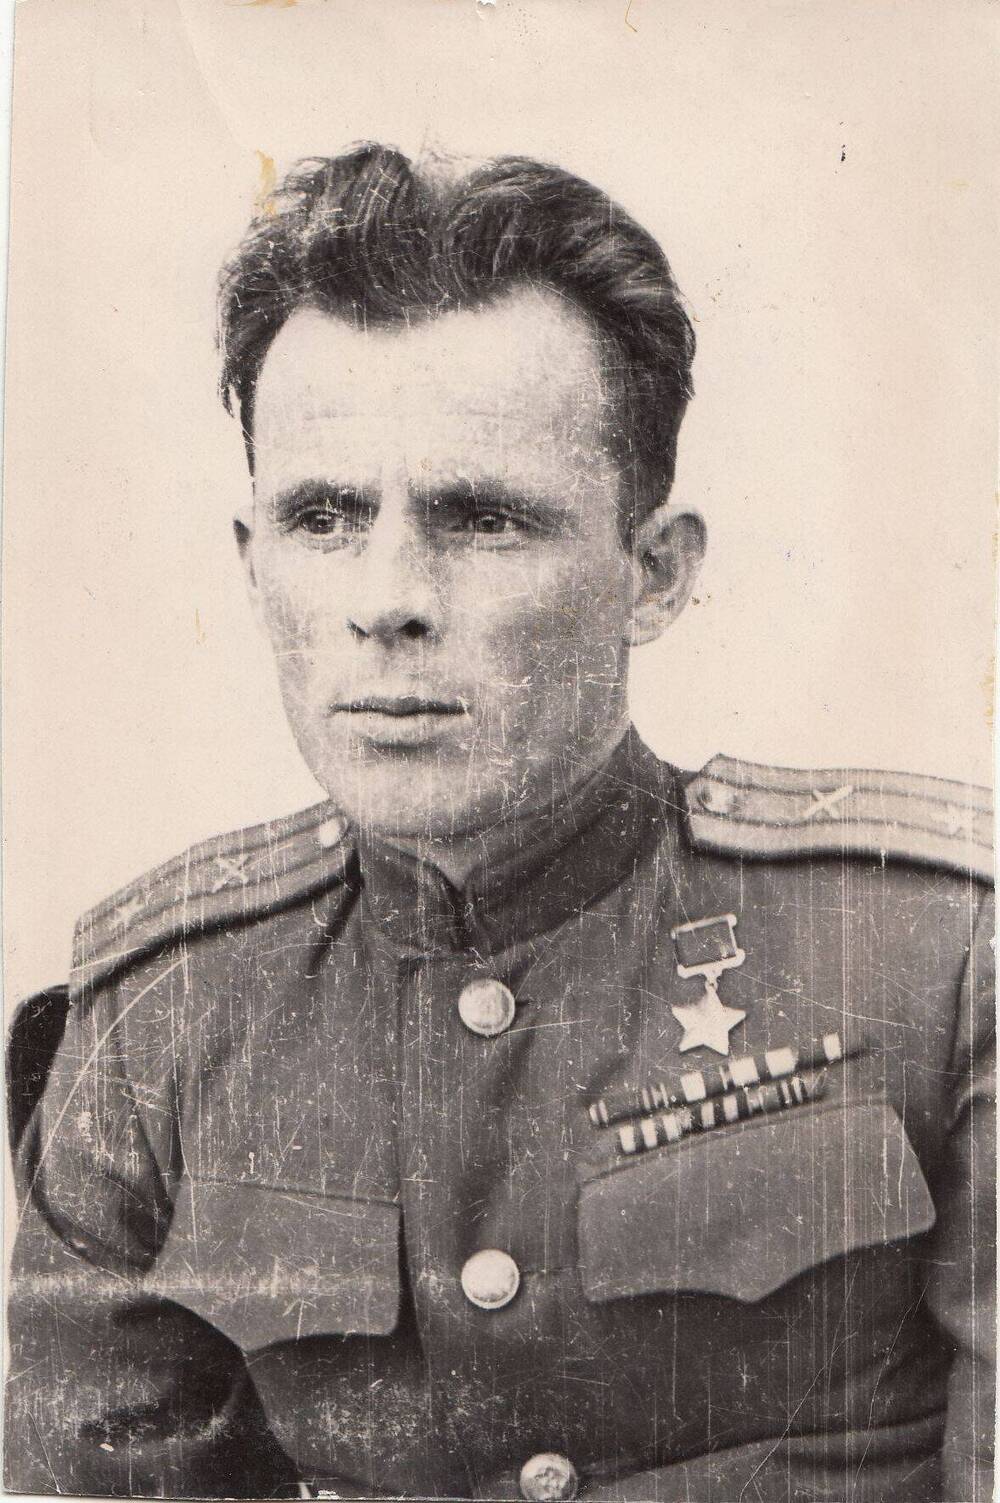 Фотография: Иванов Дмитрий Трофимович, бывший курсант Подольского артиллерийского училища